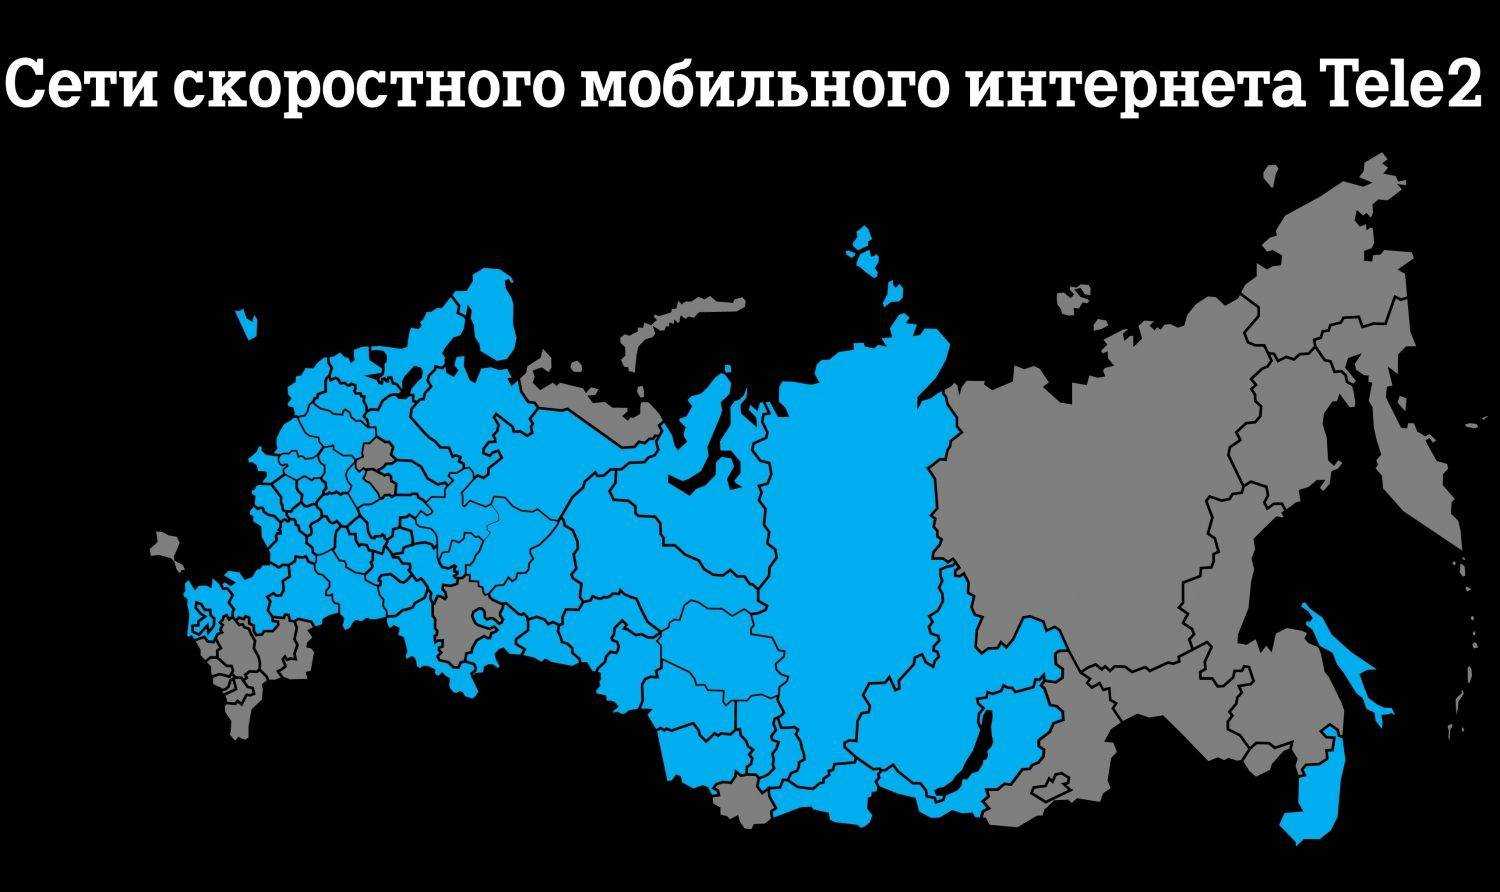 Покрытие теле2 в россии на карте